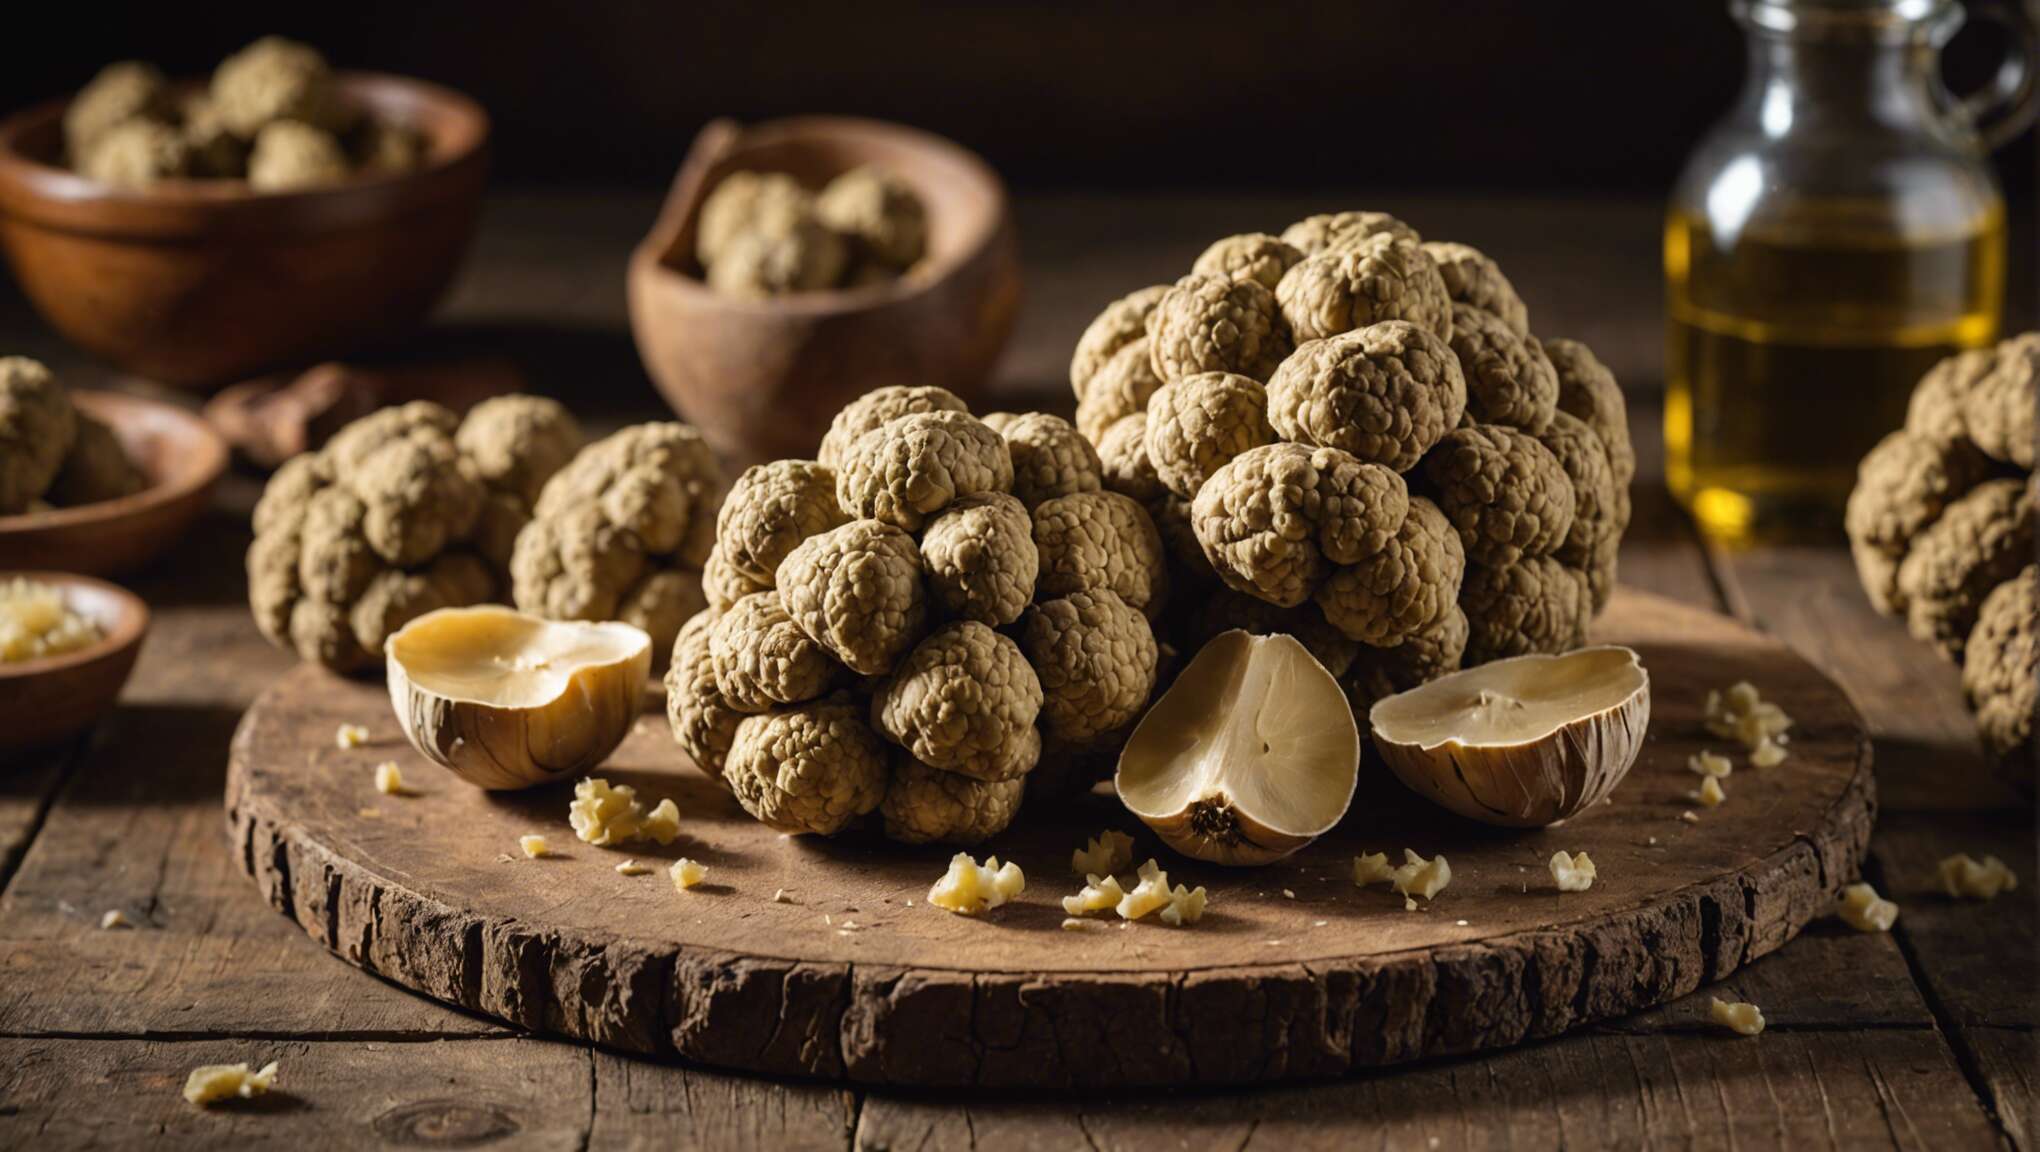 La truffe blanche d'alba : joyau de la gastronomie italienne